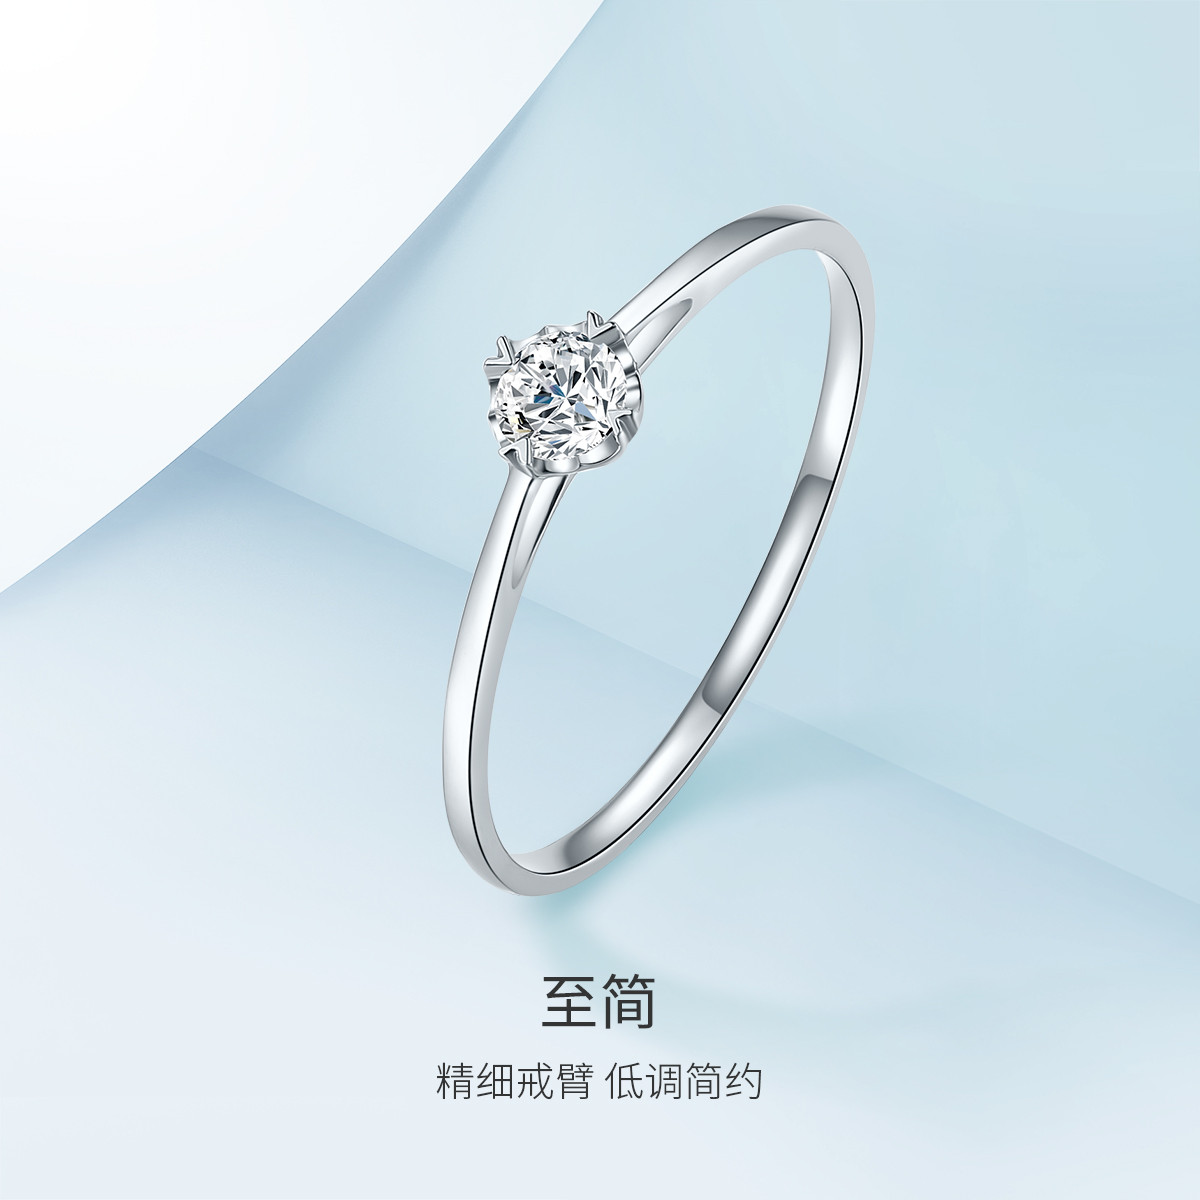 六福珠宝官方旗舰店铂金戒指图片